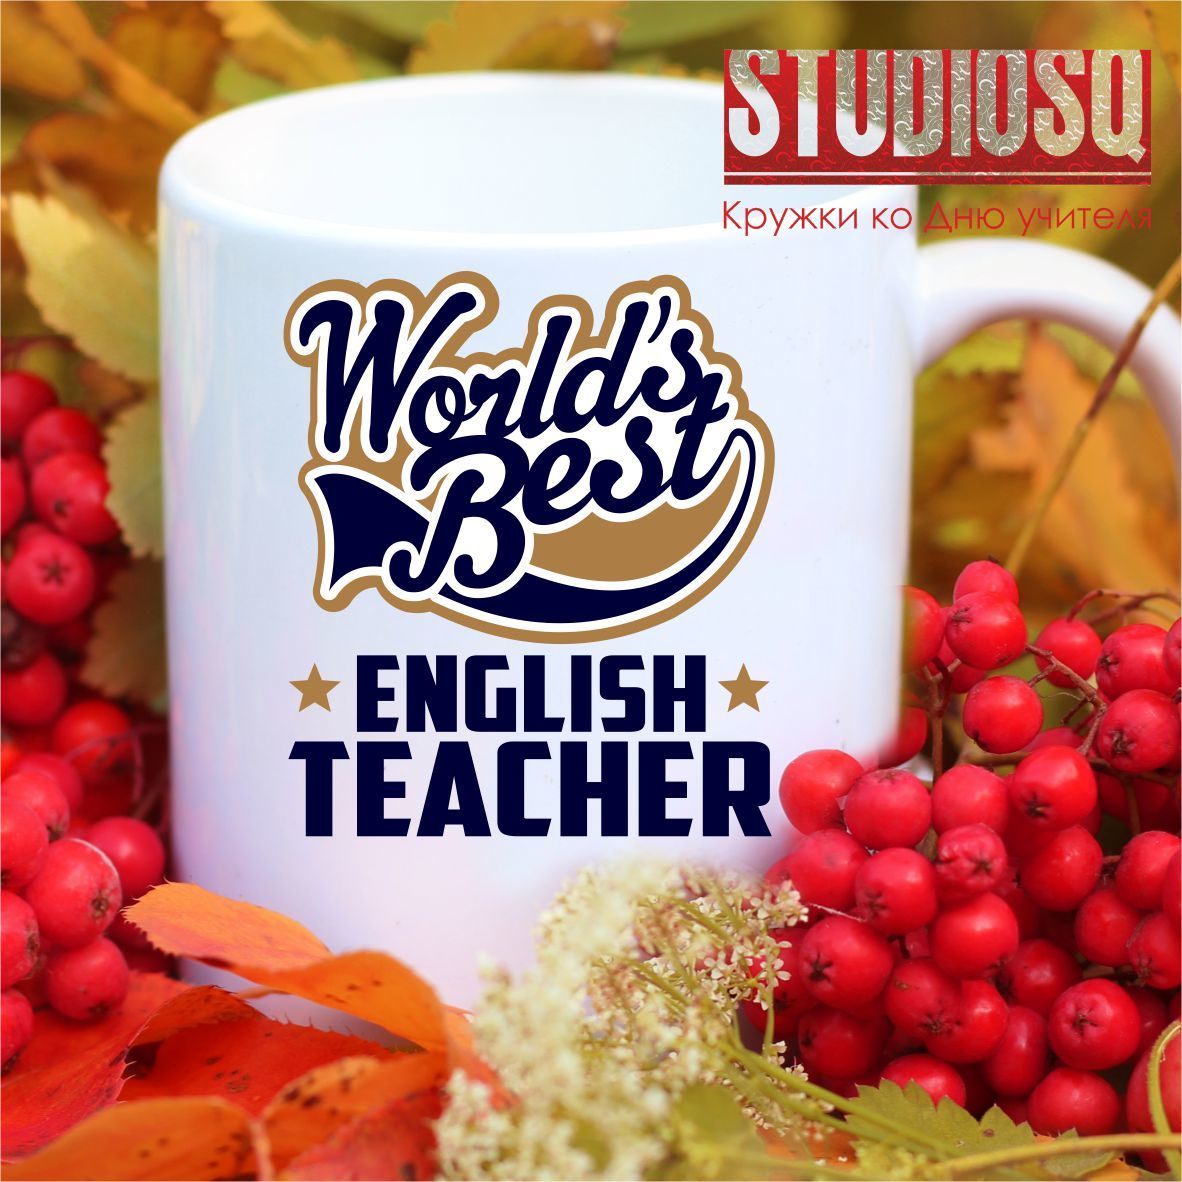 World`s best teacher